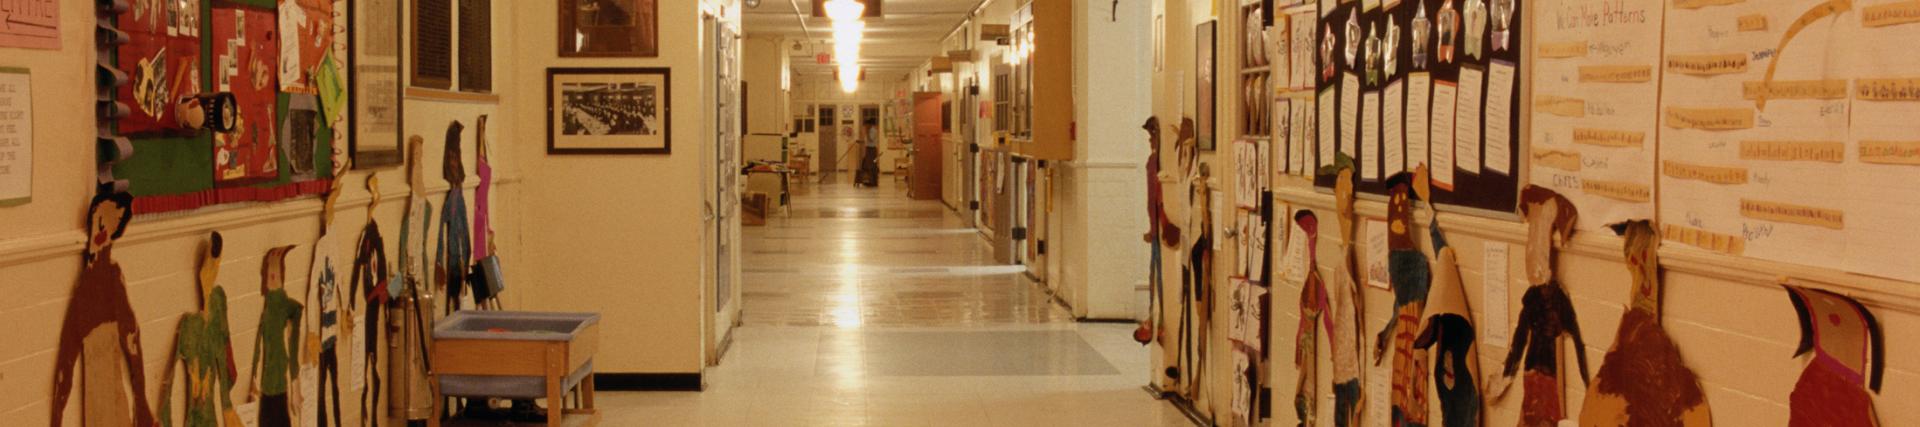 Long shot of school corridor